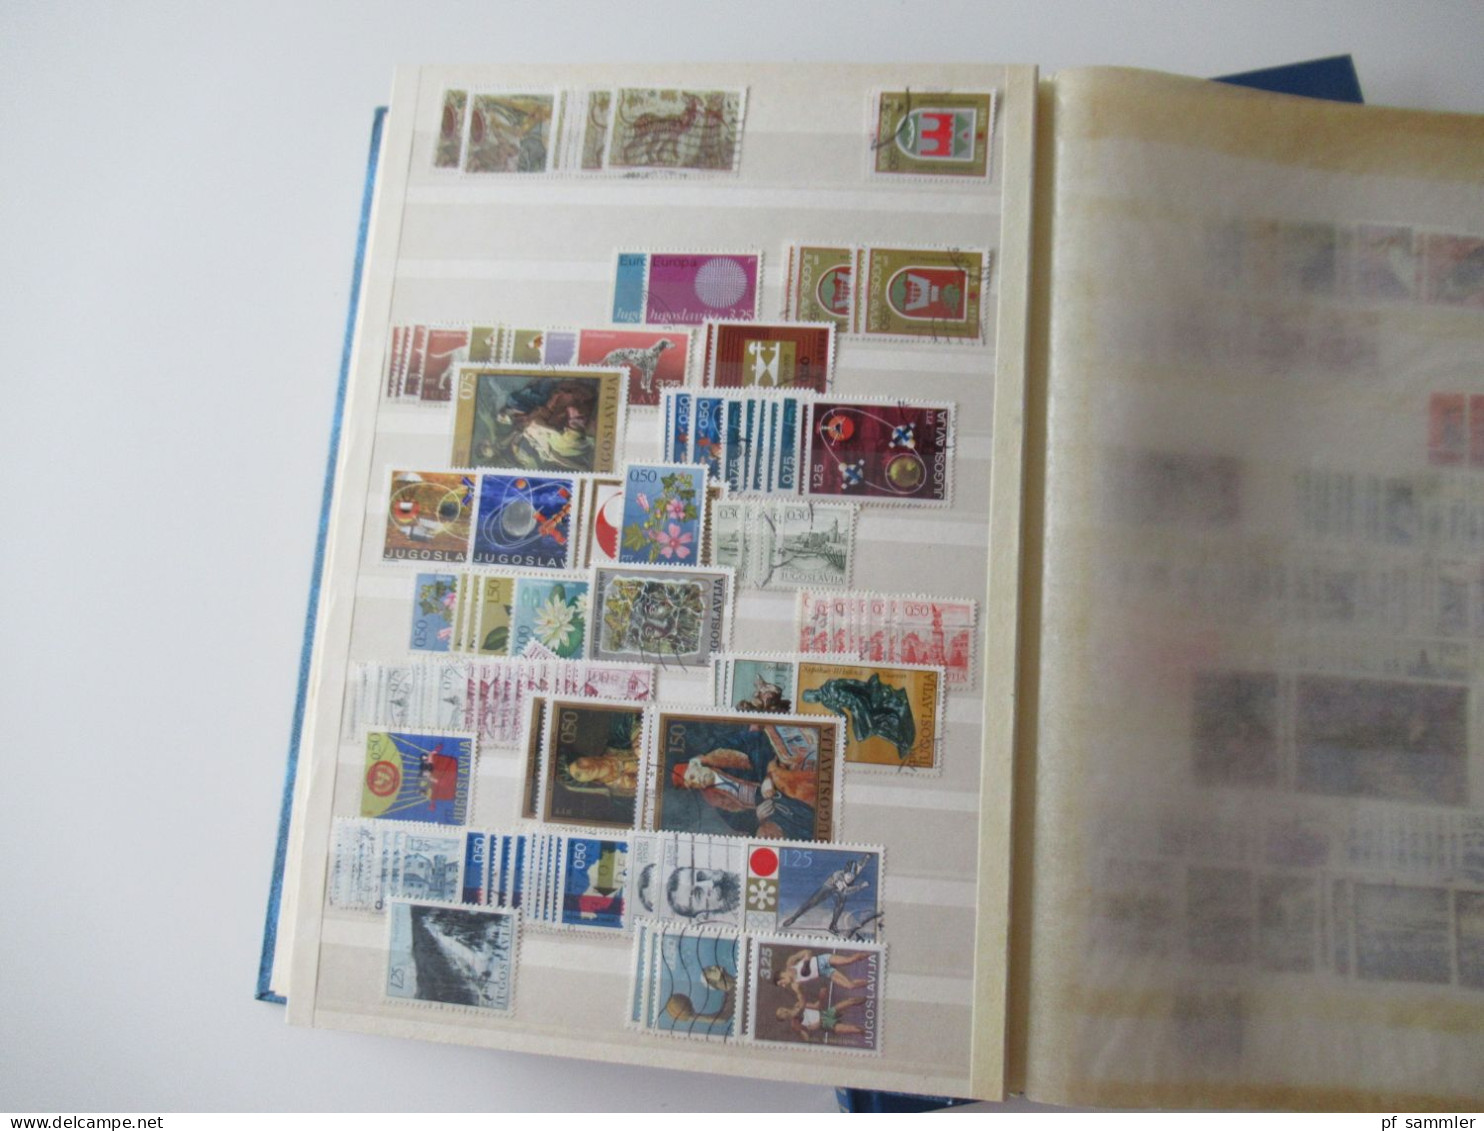 Sammlung / interessante Alben / Lagerbücher Europa Jugoslawien ab SHS - 2001 sehr viele gestempelte Marken / Fundgrube